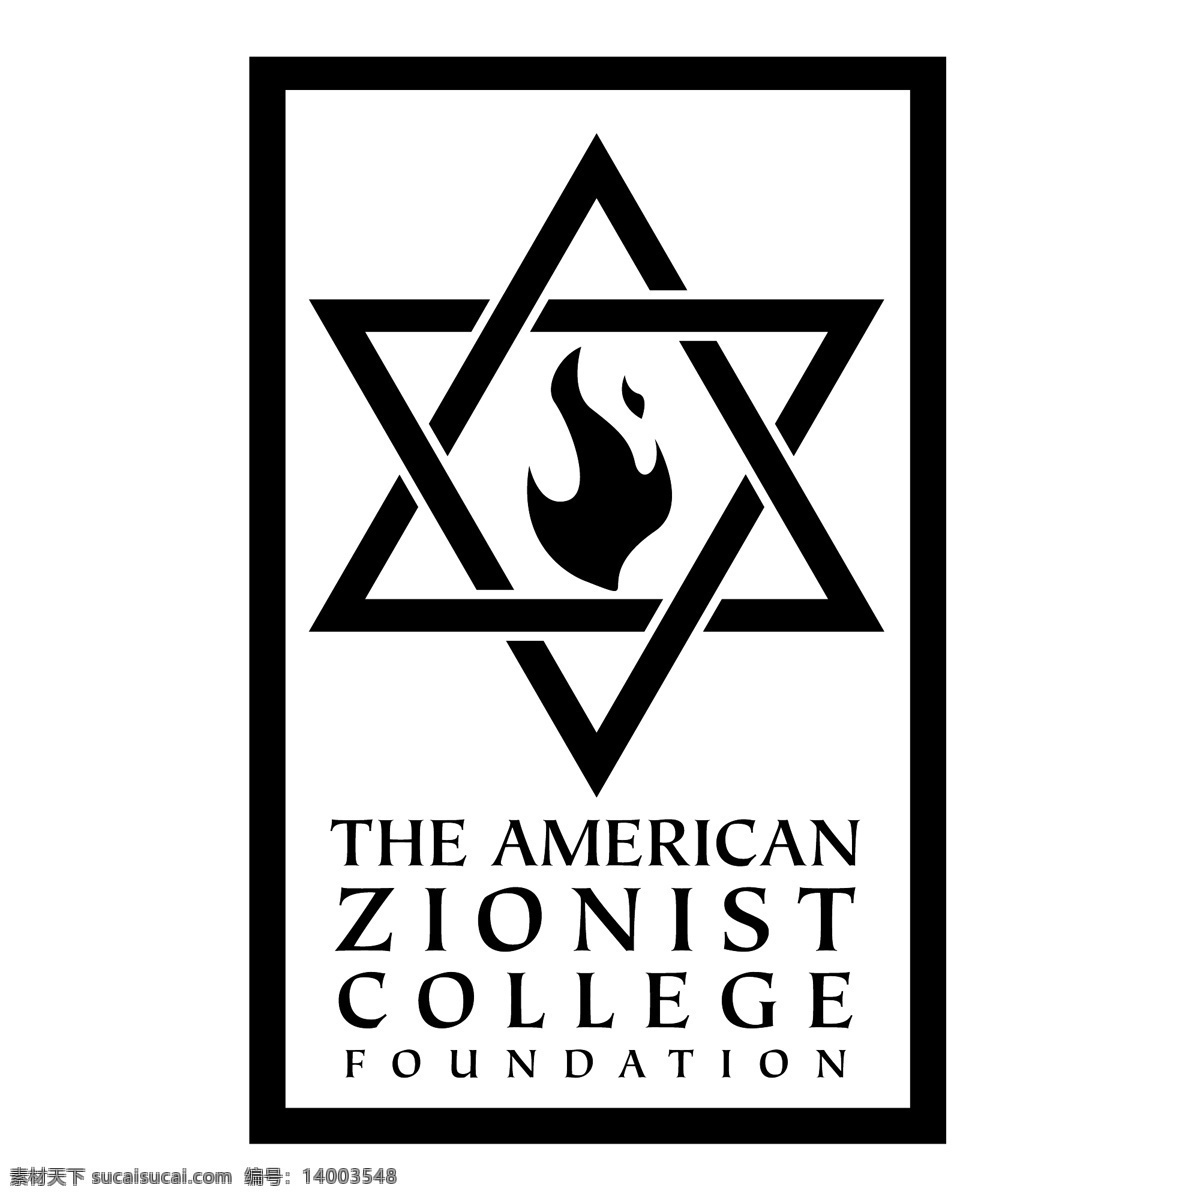 美国 犹太 复国主义 学院 基金会 大学 基础 美国犹太复国 犹太复国 学院的基础 矢量大学美国 美国大学 大学的美国 自由 载体 标志 logo 矢量 矢量图 建筑家居